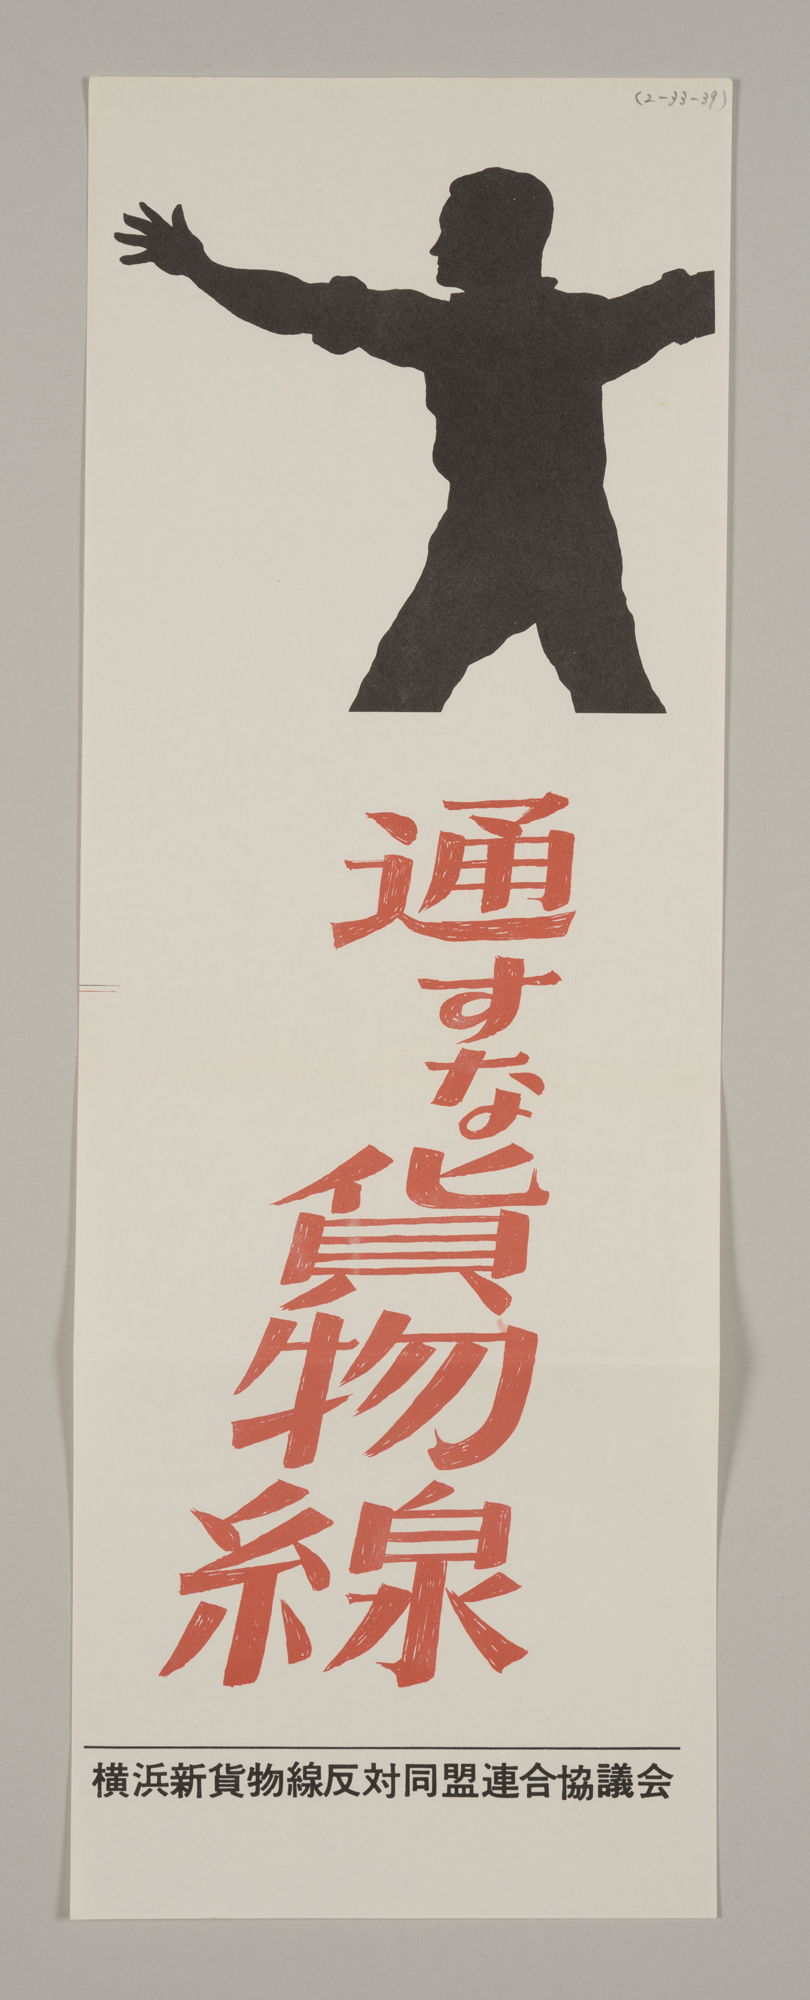 横浜新貨物線反対同盟ポスター　通すな貨物線　立教大学共生社会研究センター蔵